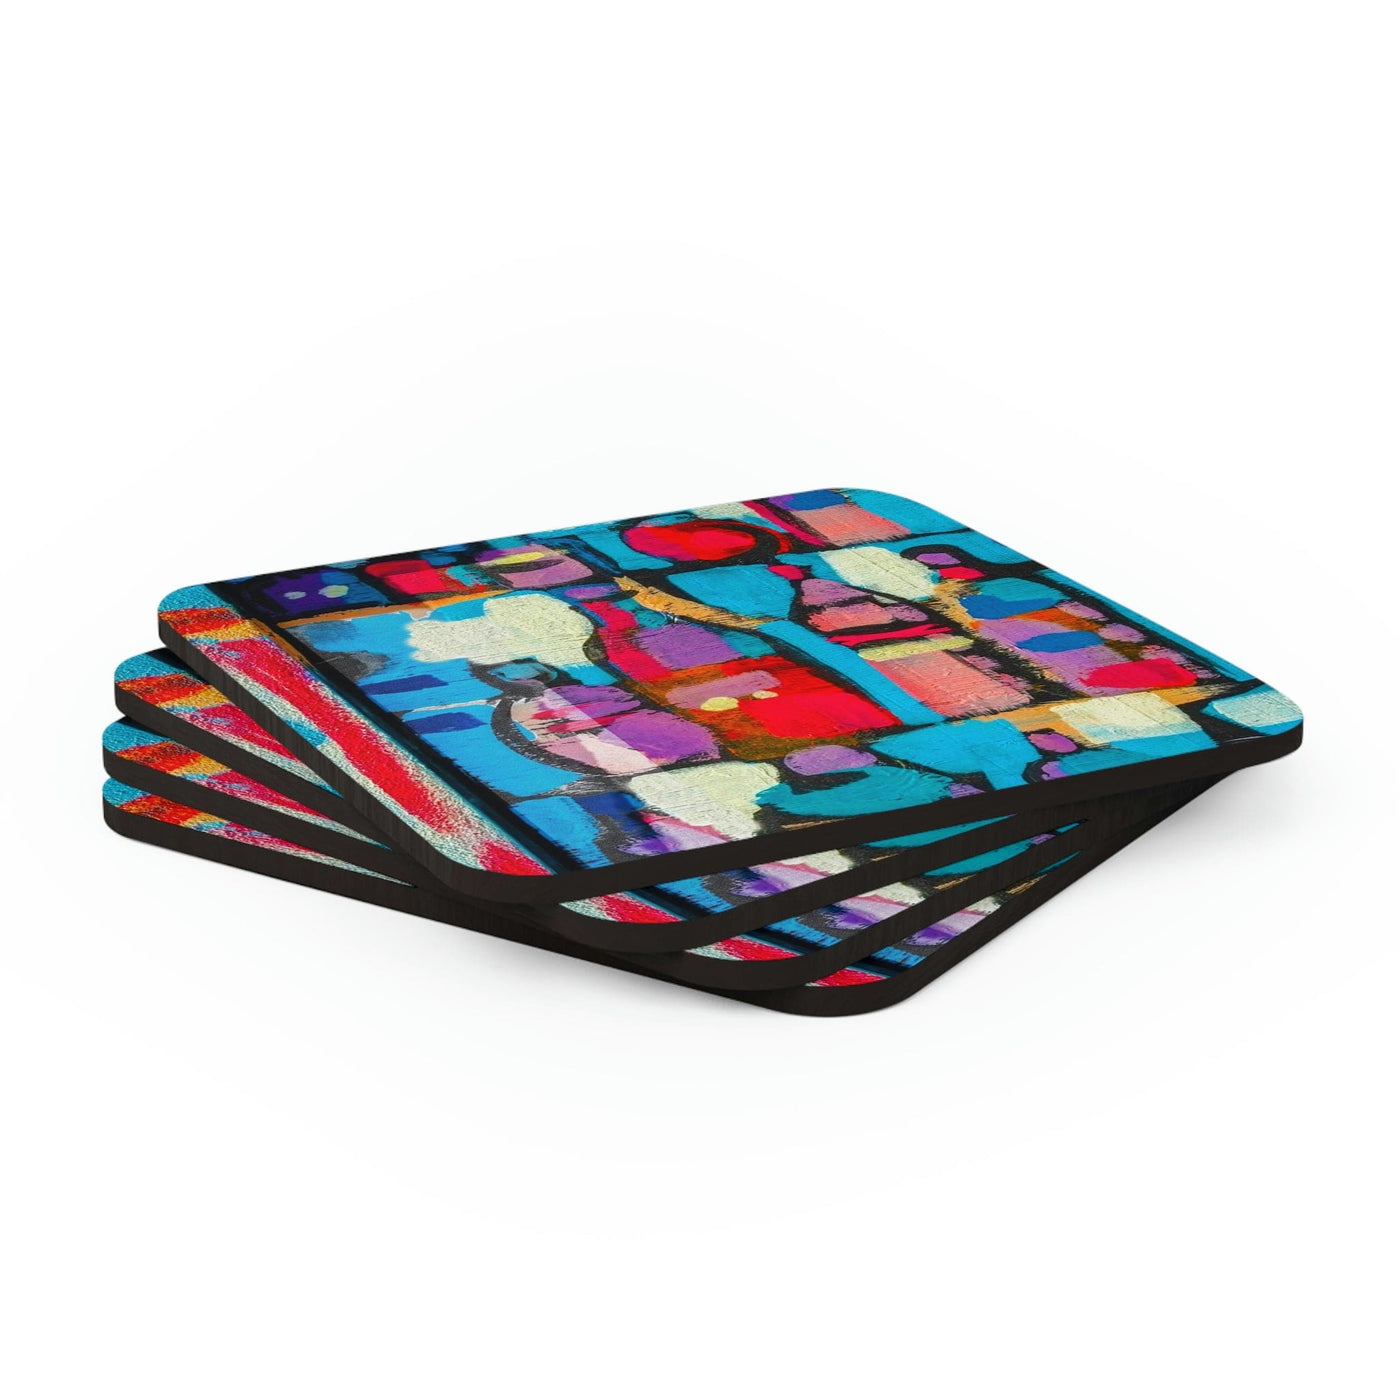 Home Decor Coaster Set - 4 Piece Home/office Sutileza Smooth Colorful Abstract